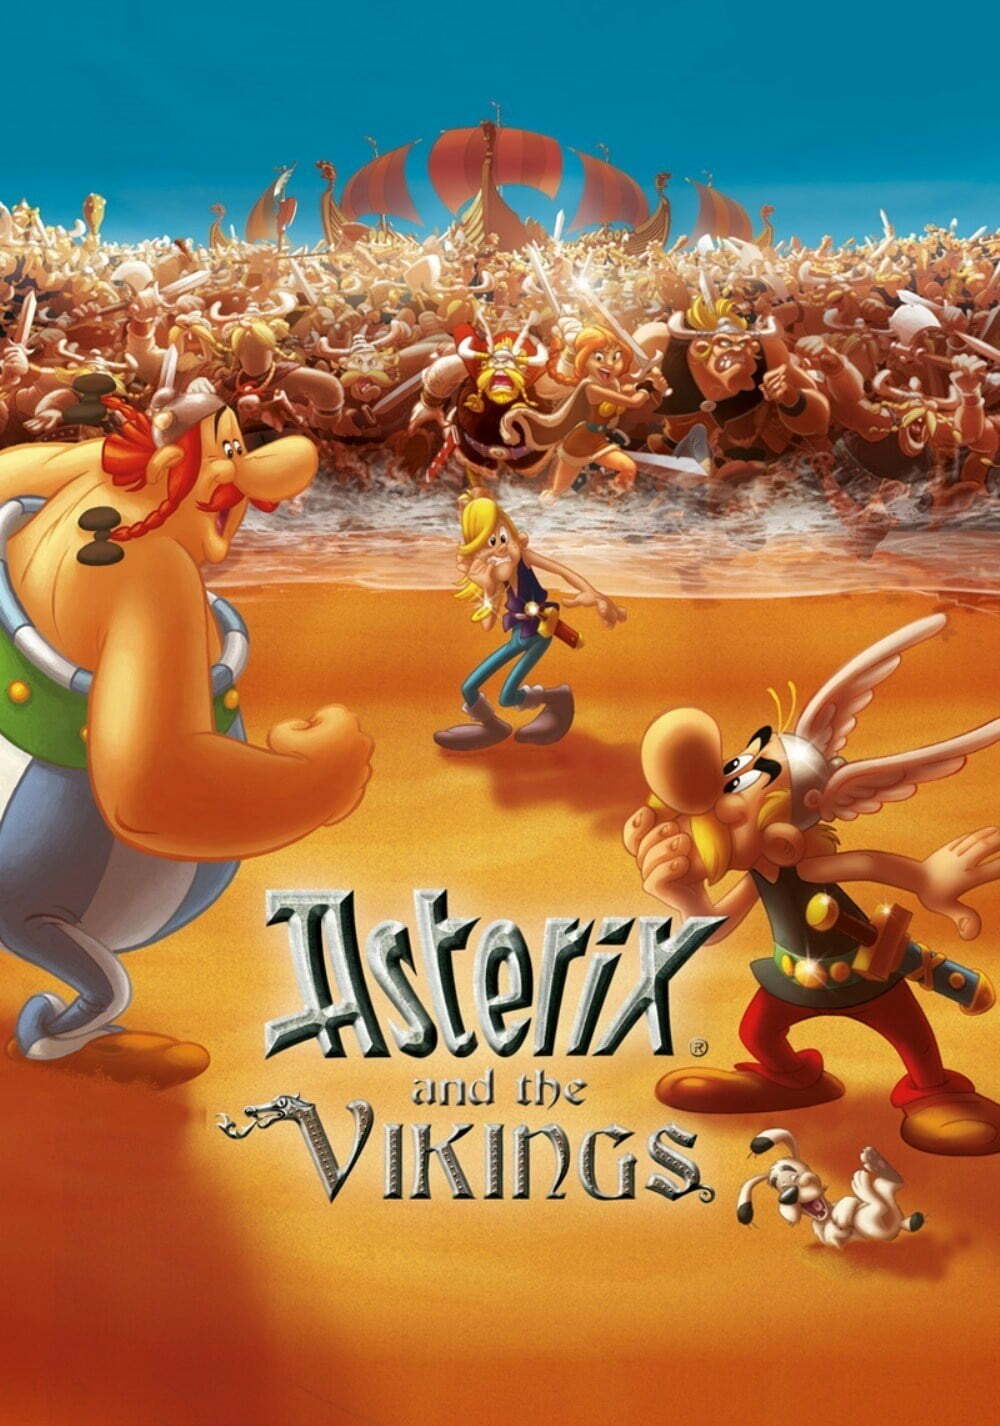 Asterix si vikingii (2006) dublat in romana Online